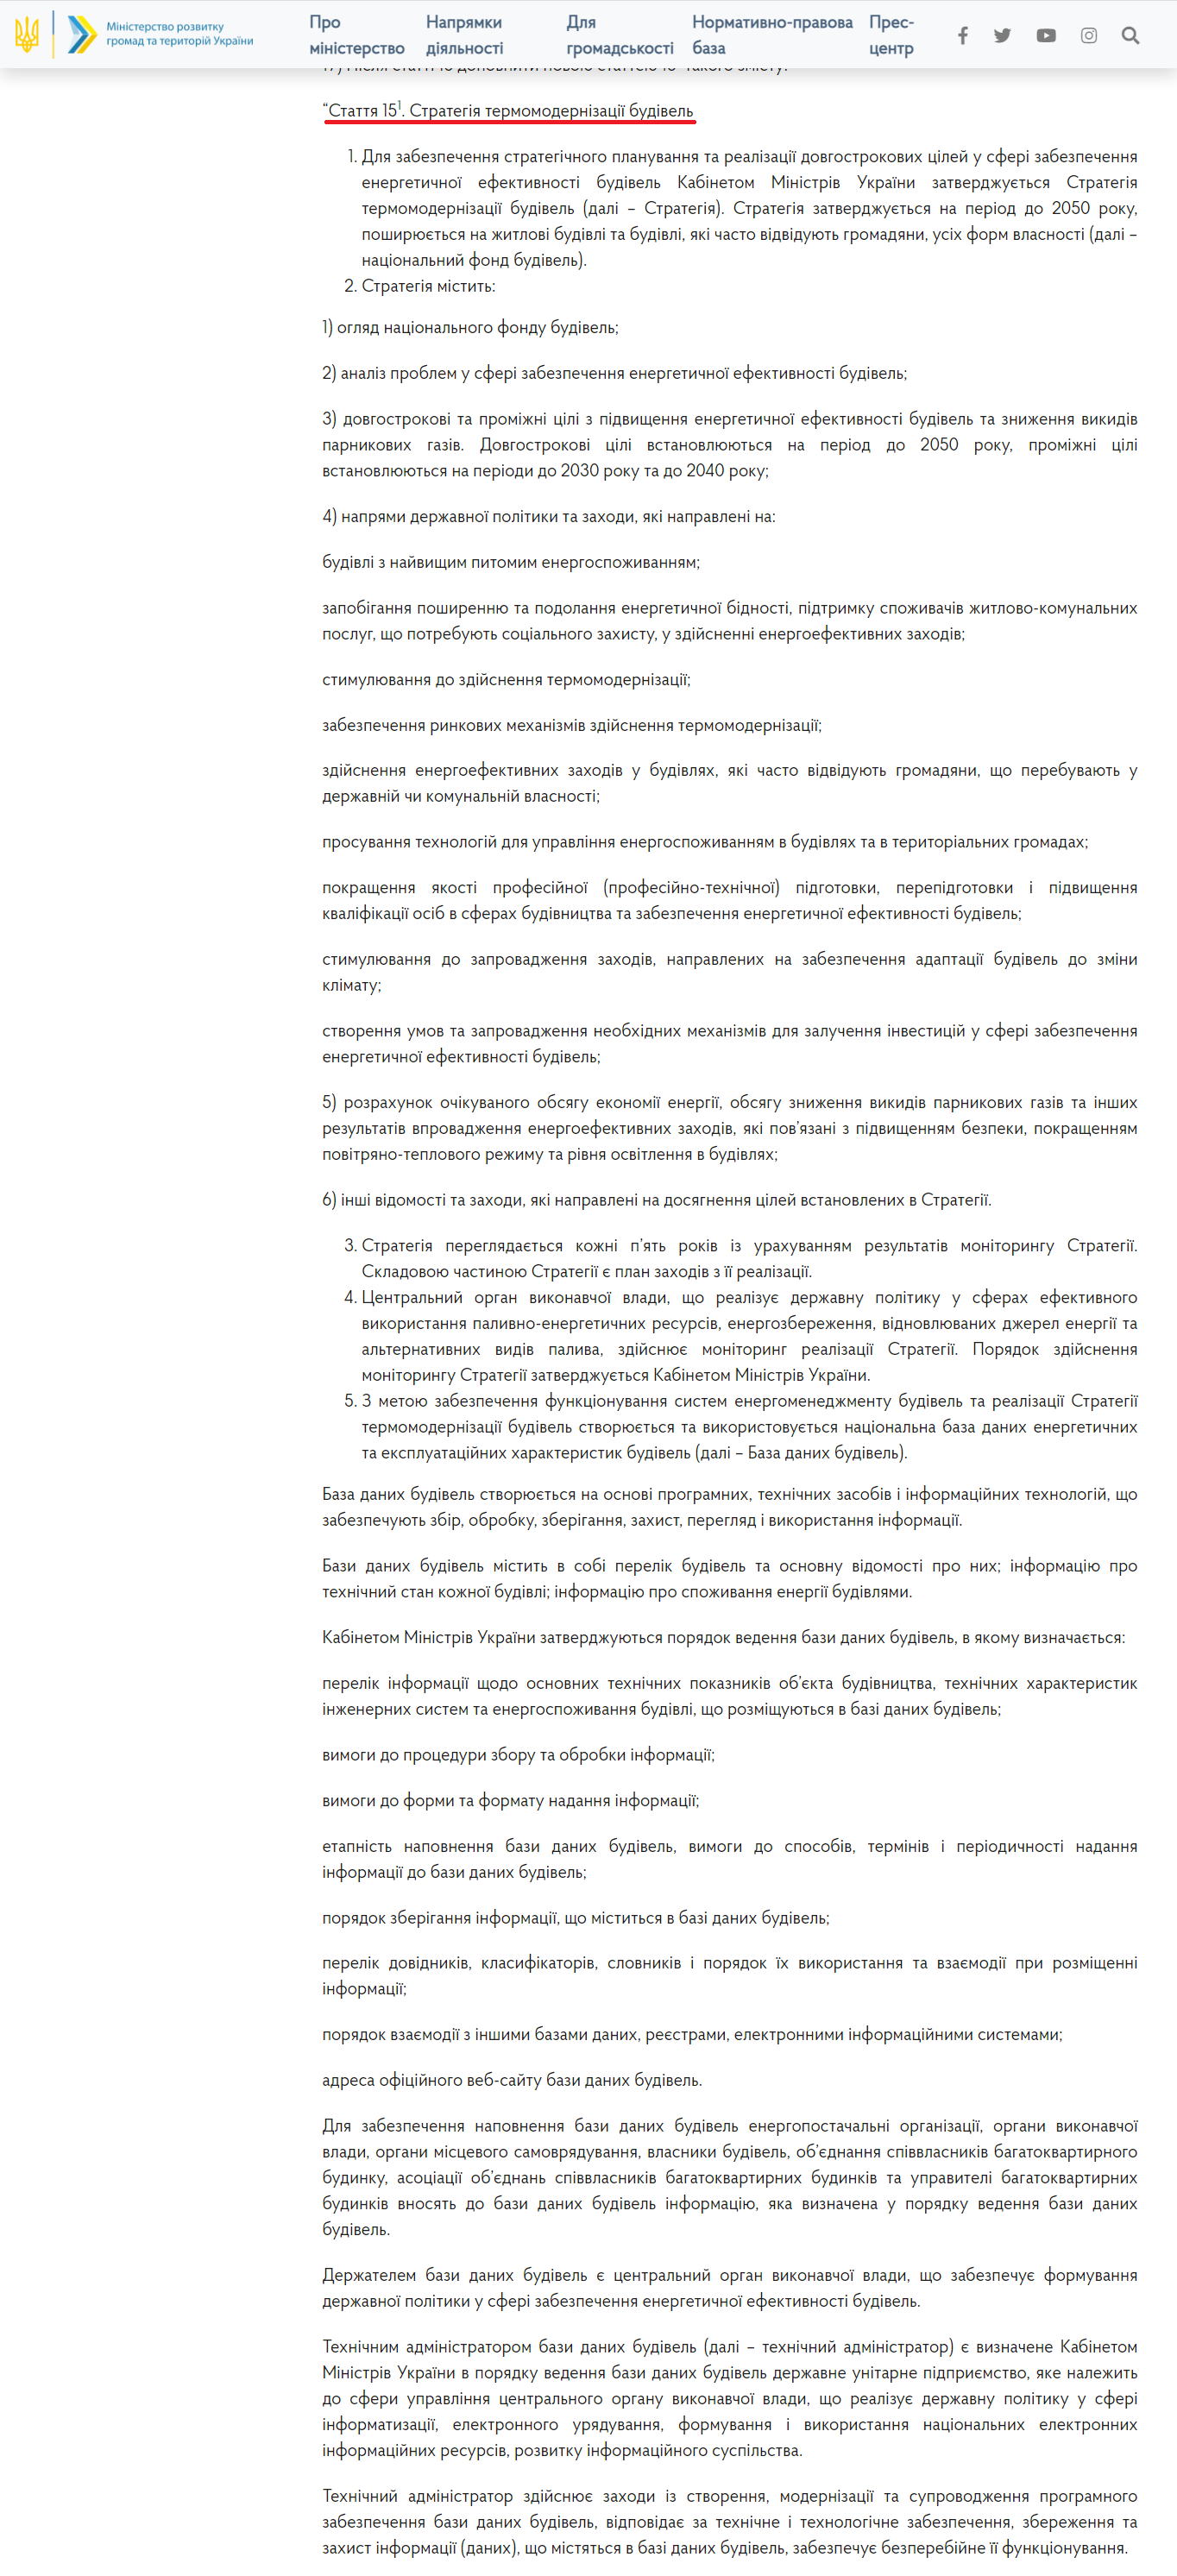 https://www.minregion.gov.ua/base-law/grom-convers/elektronni-konsultatsiyi-z-gromadskistyu/proekt-zakonu-ukrayiny-pro-stvorennya-umov-dlya-zaprovadzhennya-kompleksnoyi-termomodernizacziyi-budivel/